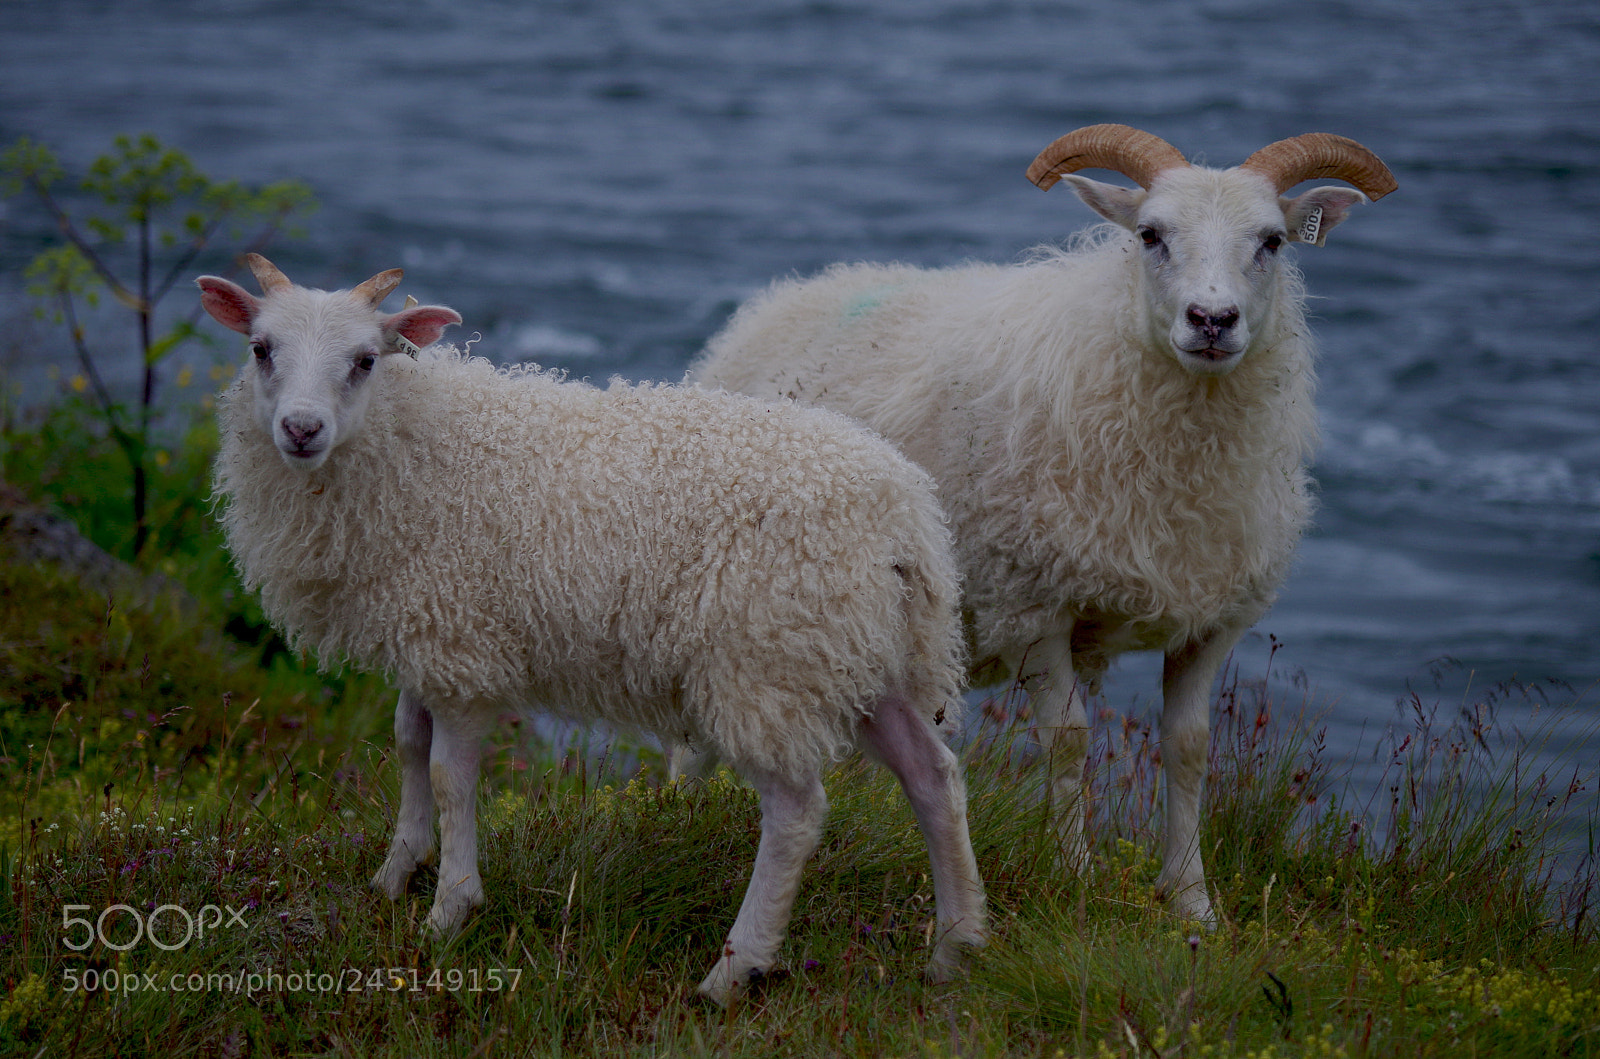 Pentax K-500 sample photo. Sheep and lamb photography